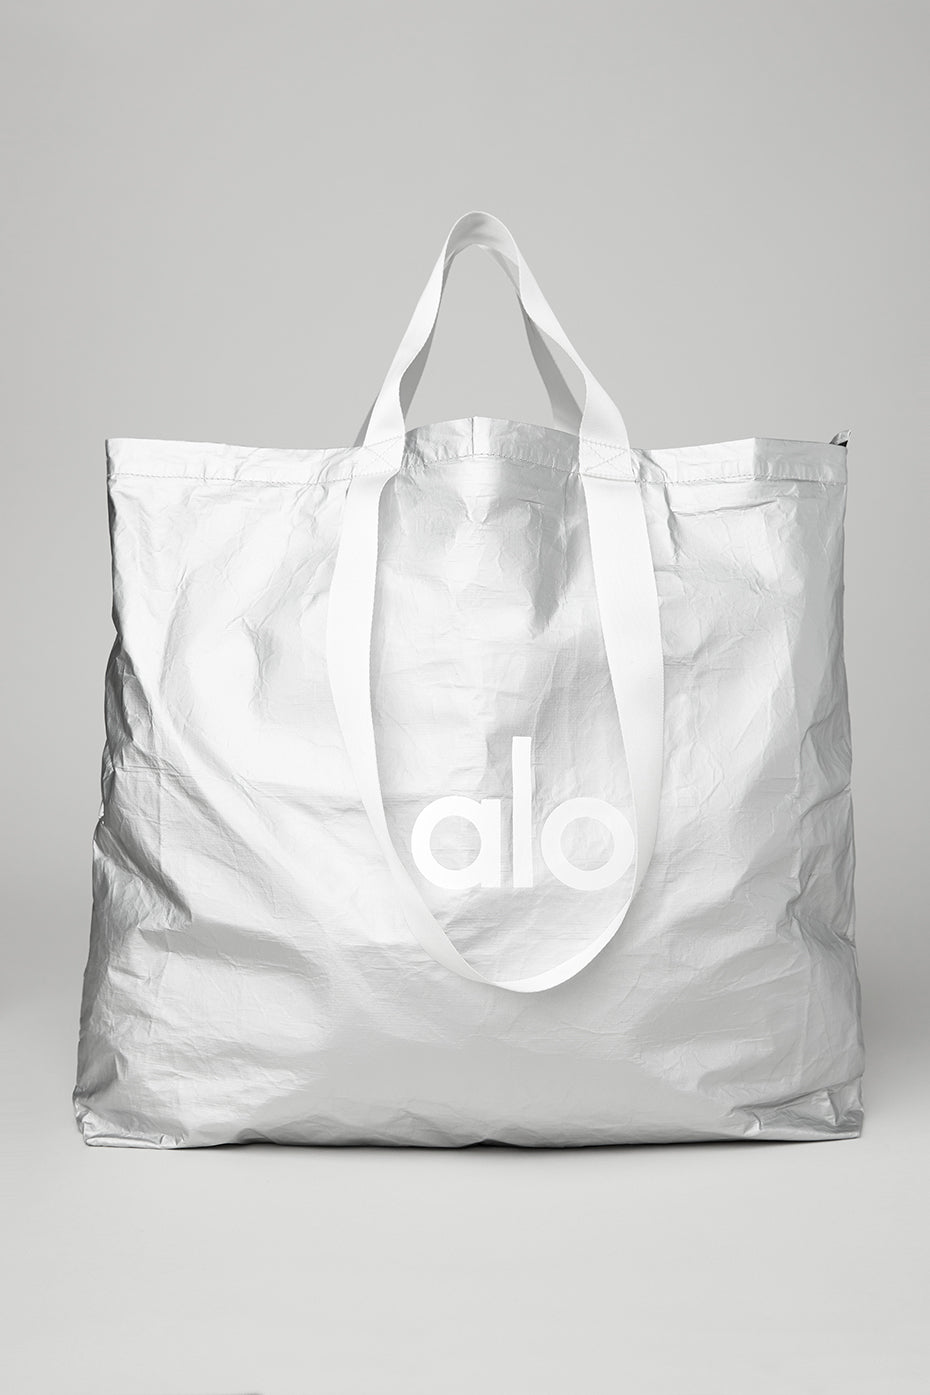 alibrands - Alo Yoga Bags